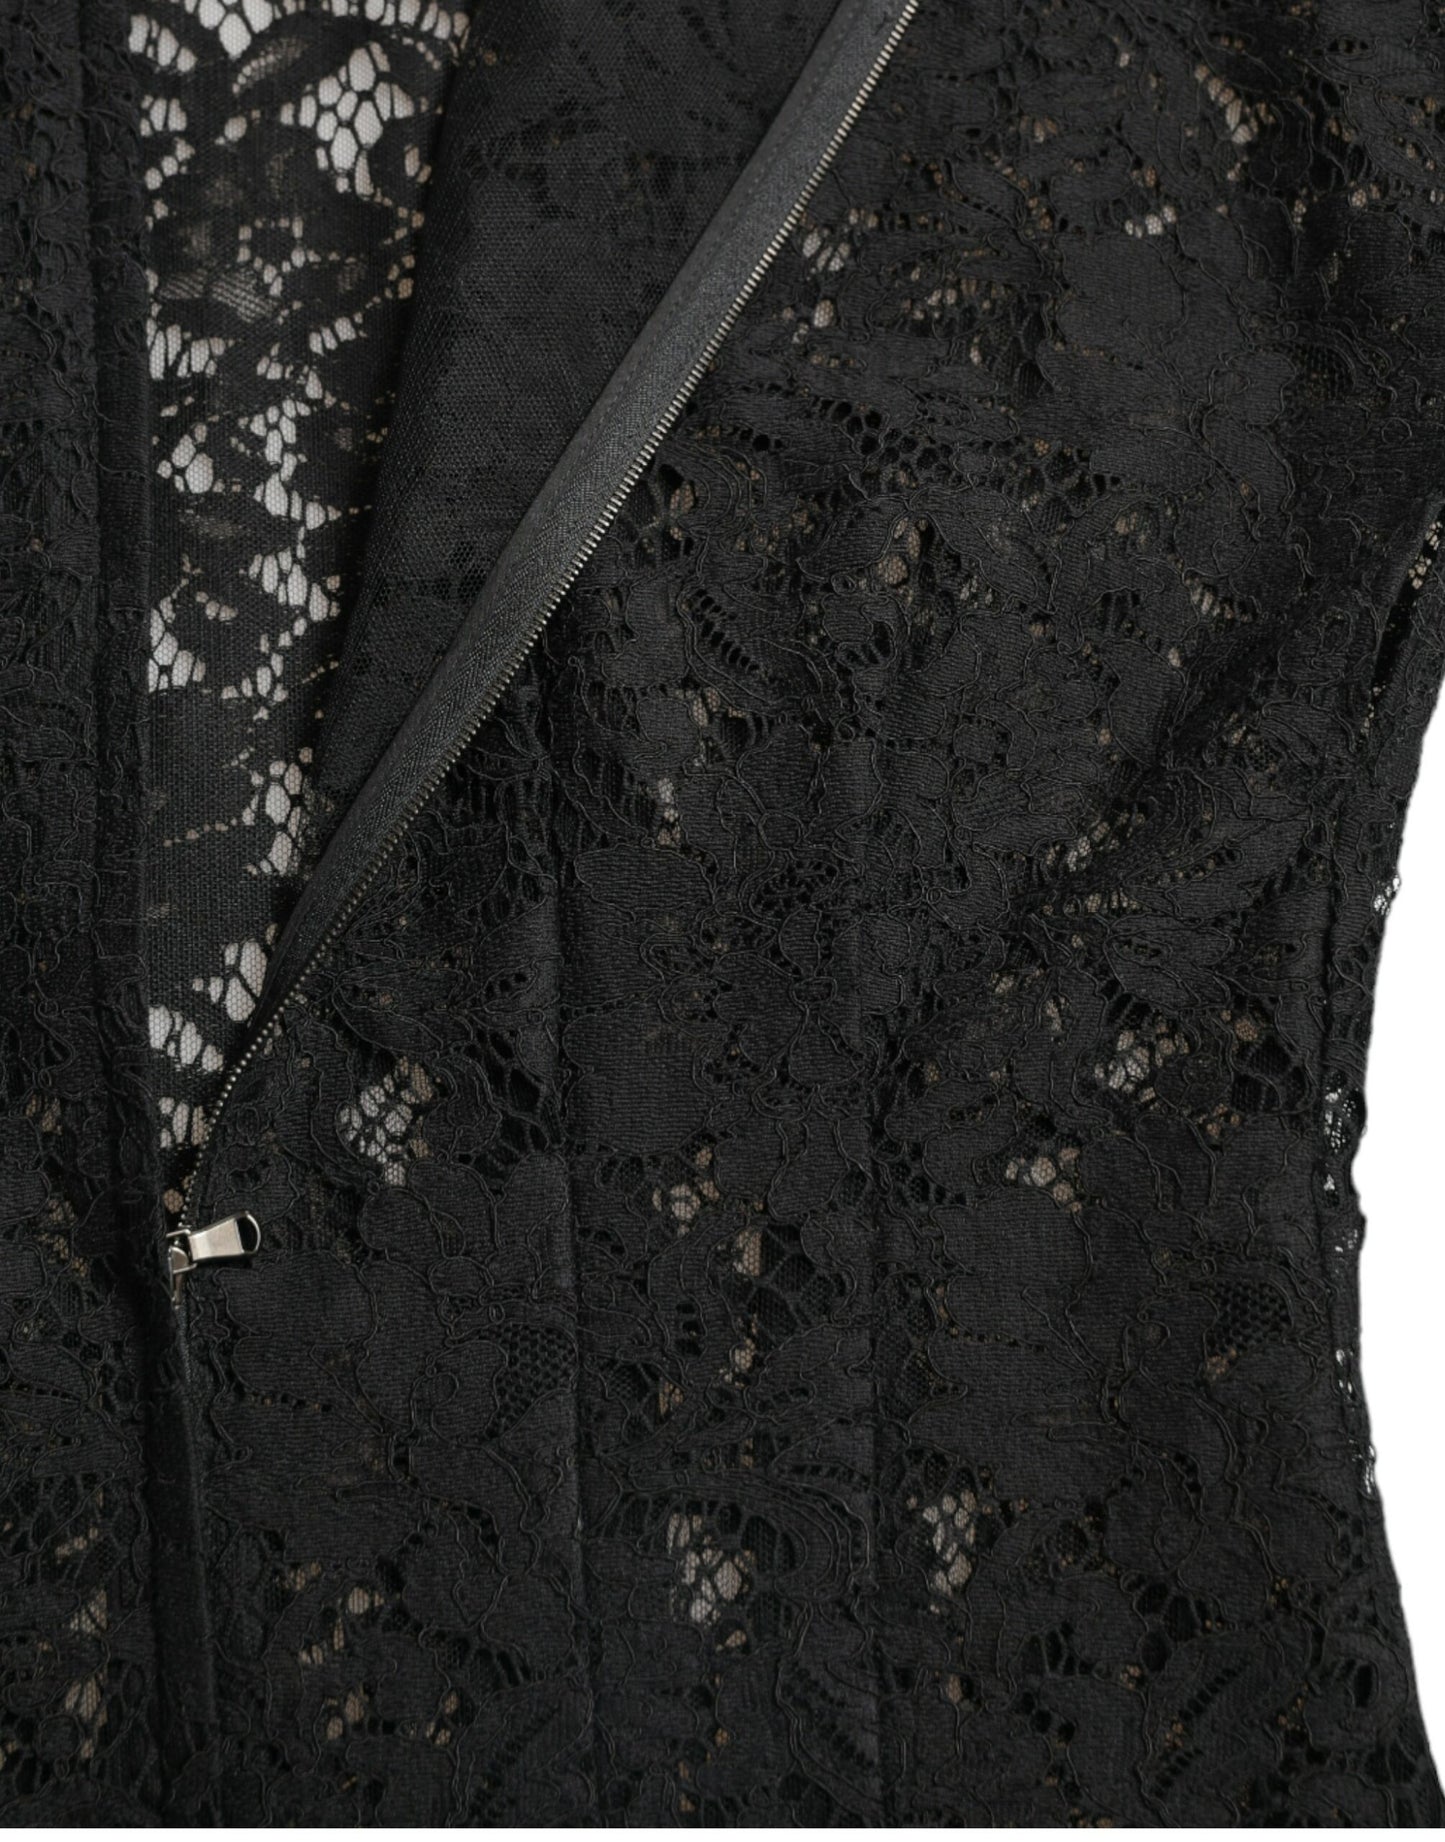 Elegant Black Floral Lace A-Line Mini Dress